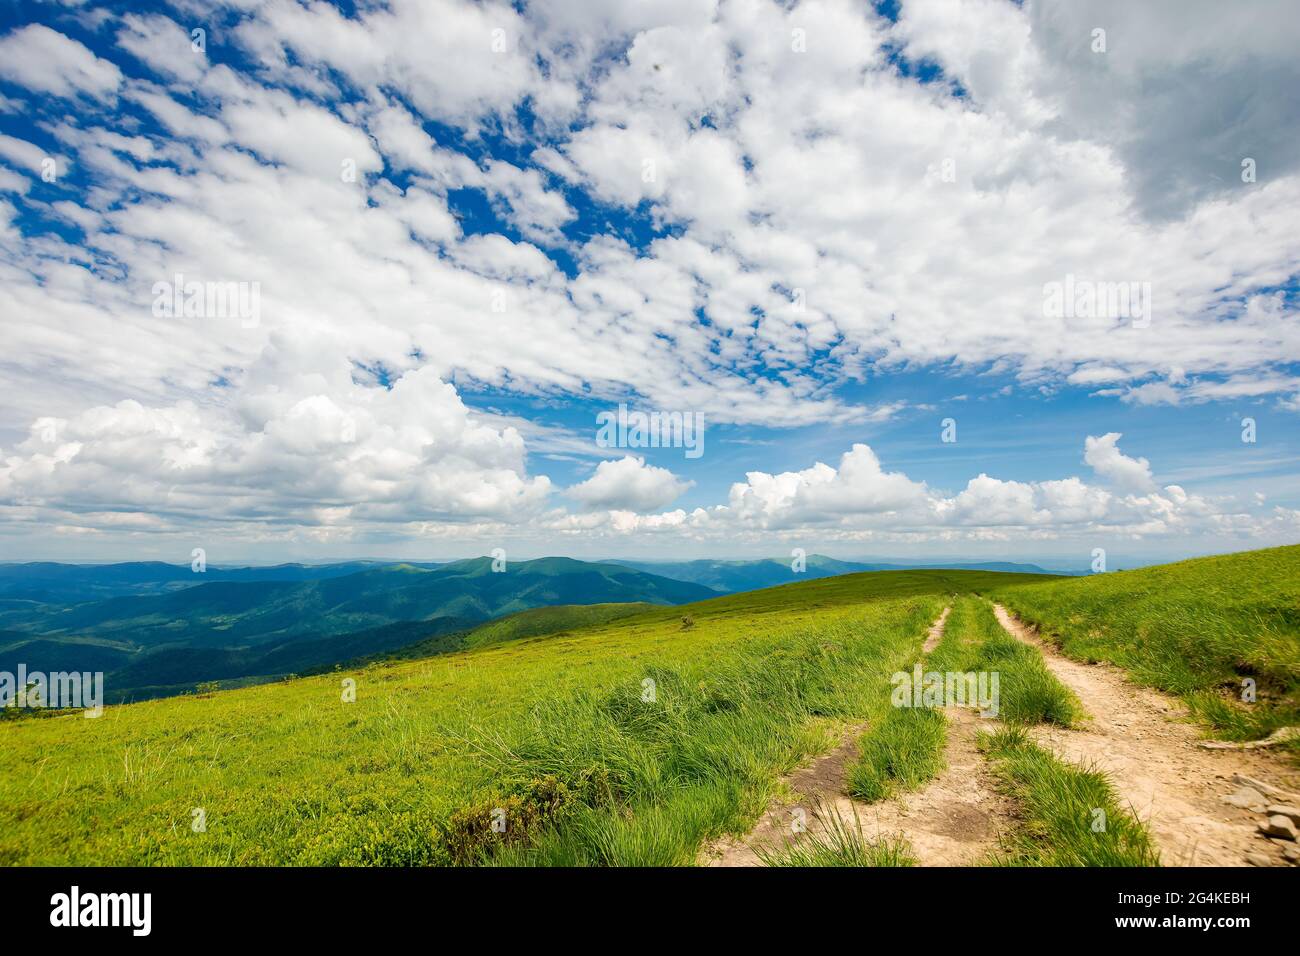 Landstraße durch grasbewachsene Hügel. Bergrücken in der Ferne unter einer wunderschönen Wolkenlandschaft am blauen Himmel. Reise-Backcountry-Konzept Stockfoto